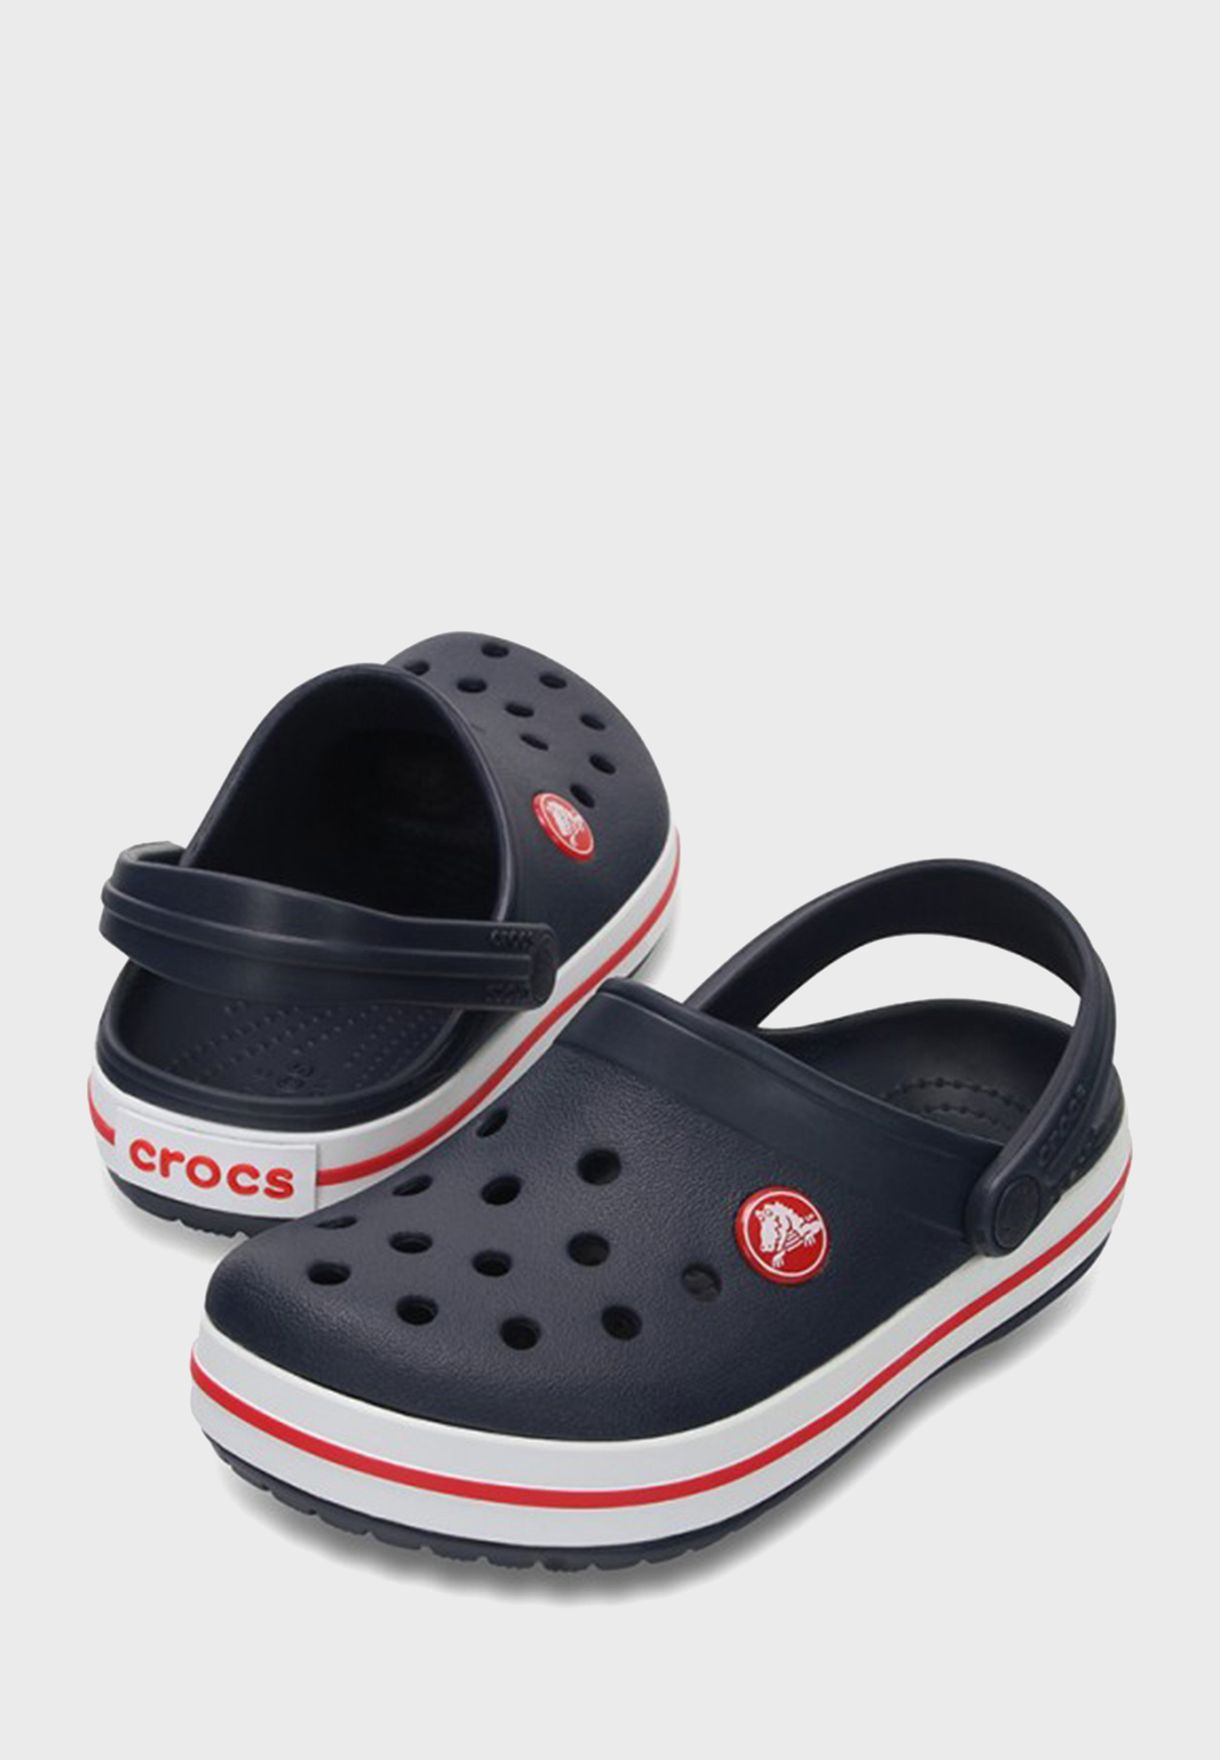 Kids Crocband Clog Sandals